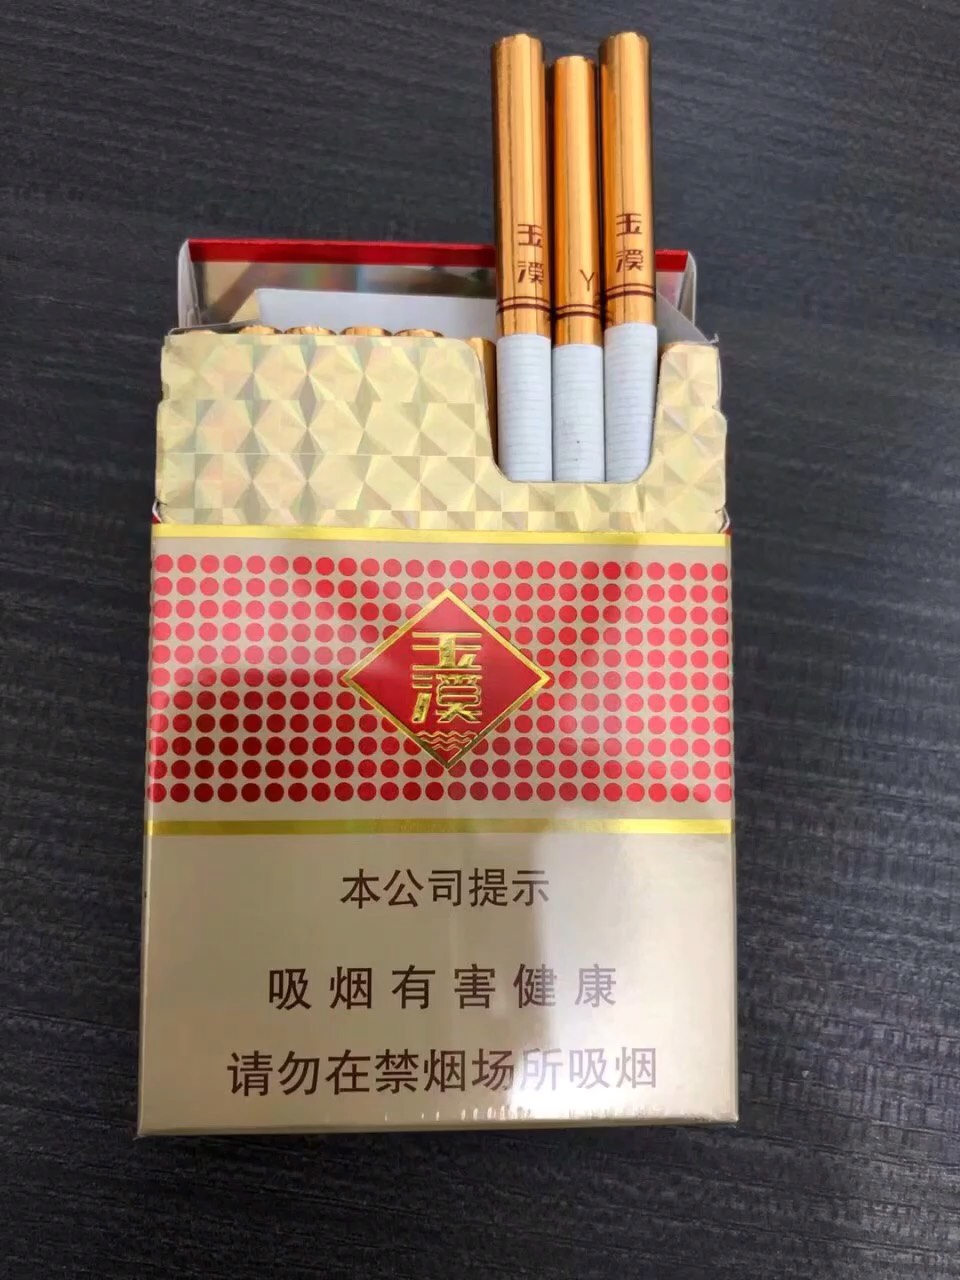 中支玉溪口粮,香烟一览表